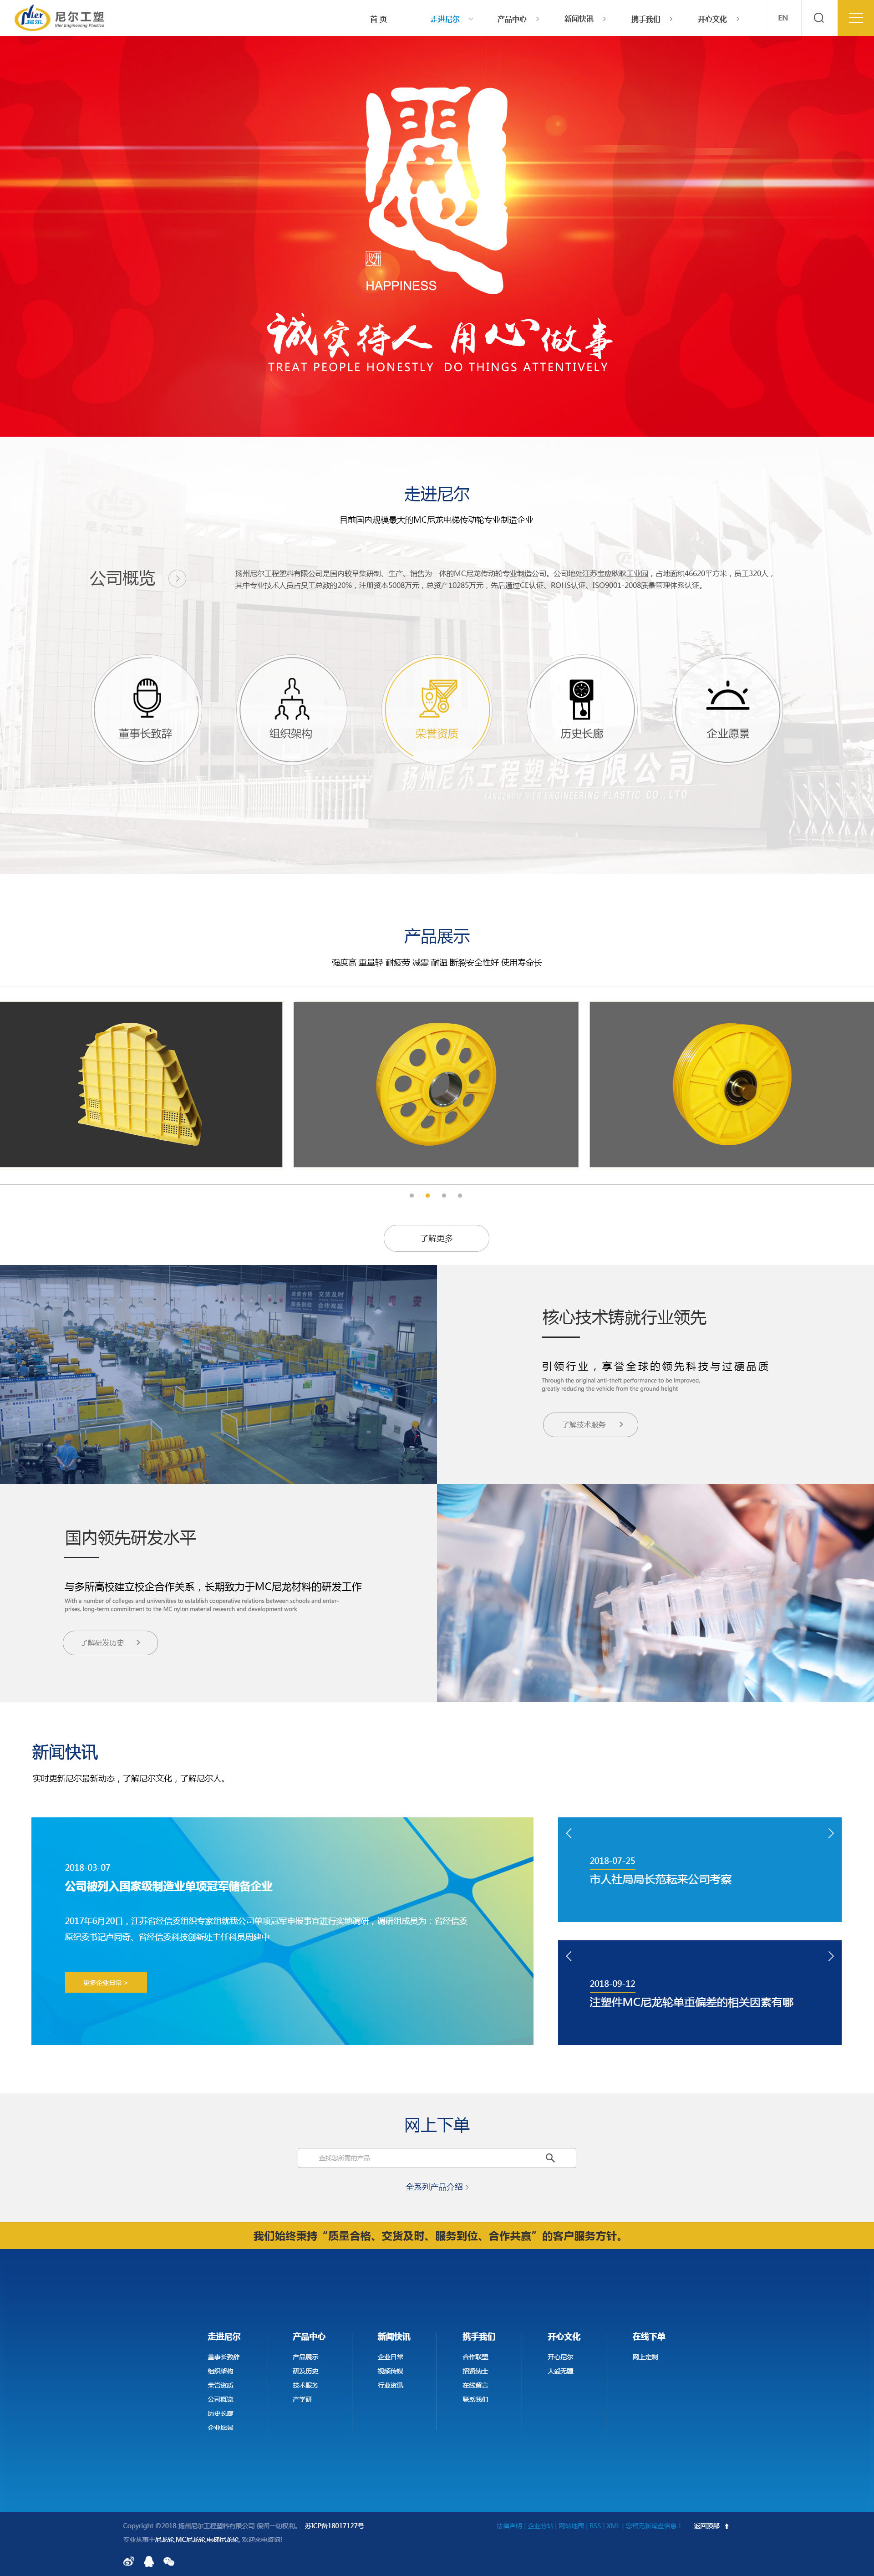 響應式網站——揚州尼爾工程橡塑